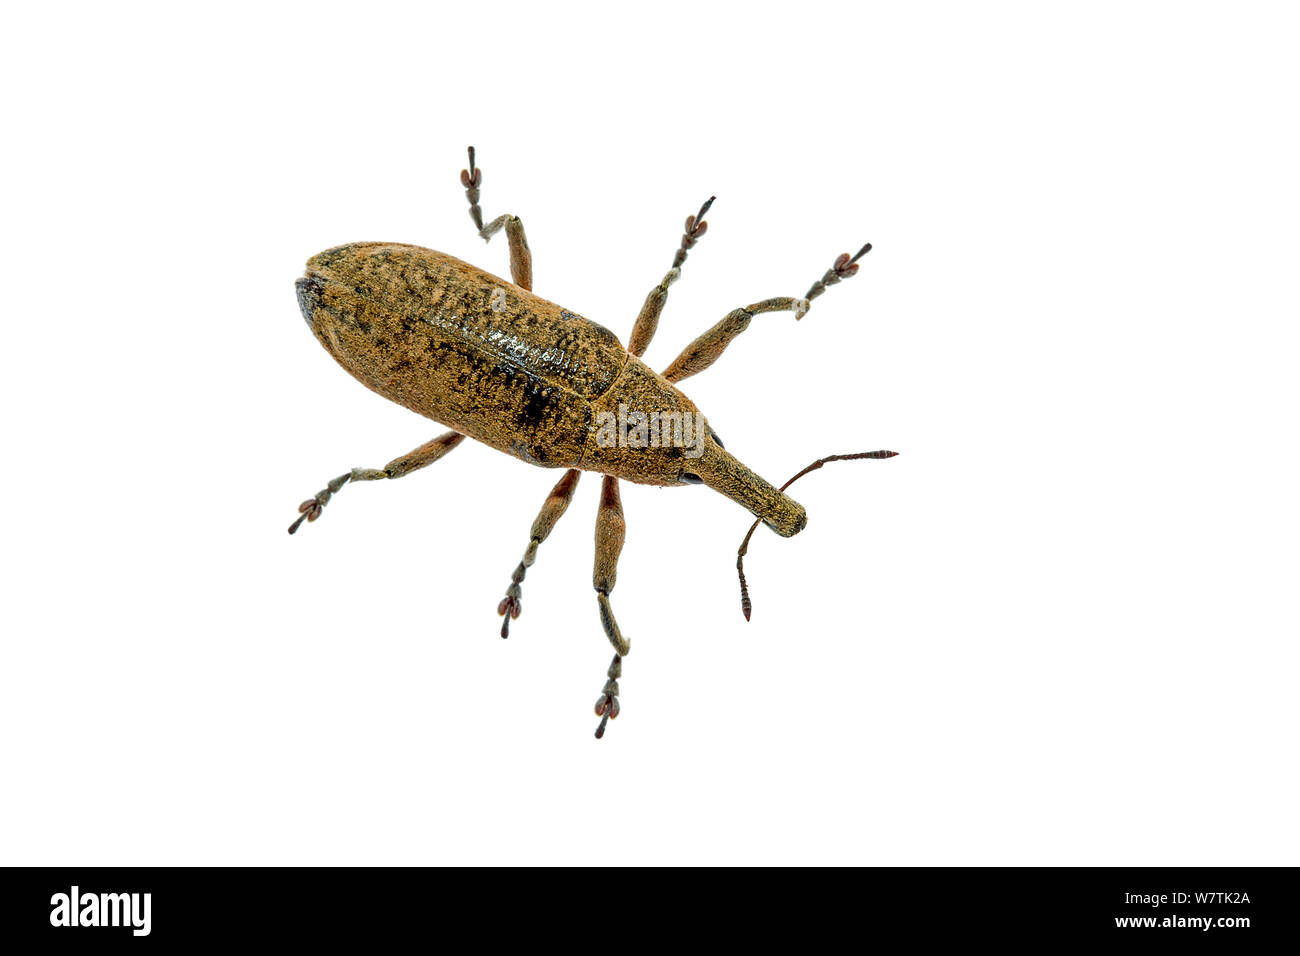 Weevil beetle (Lixus sp.) Crete, Greece. Meetyourneighbours.net project Stock Photo